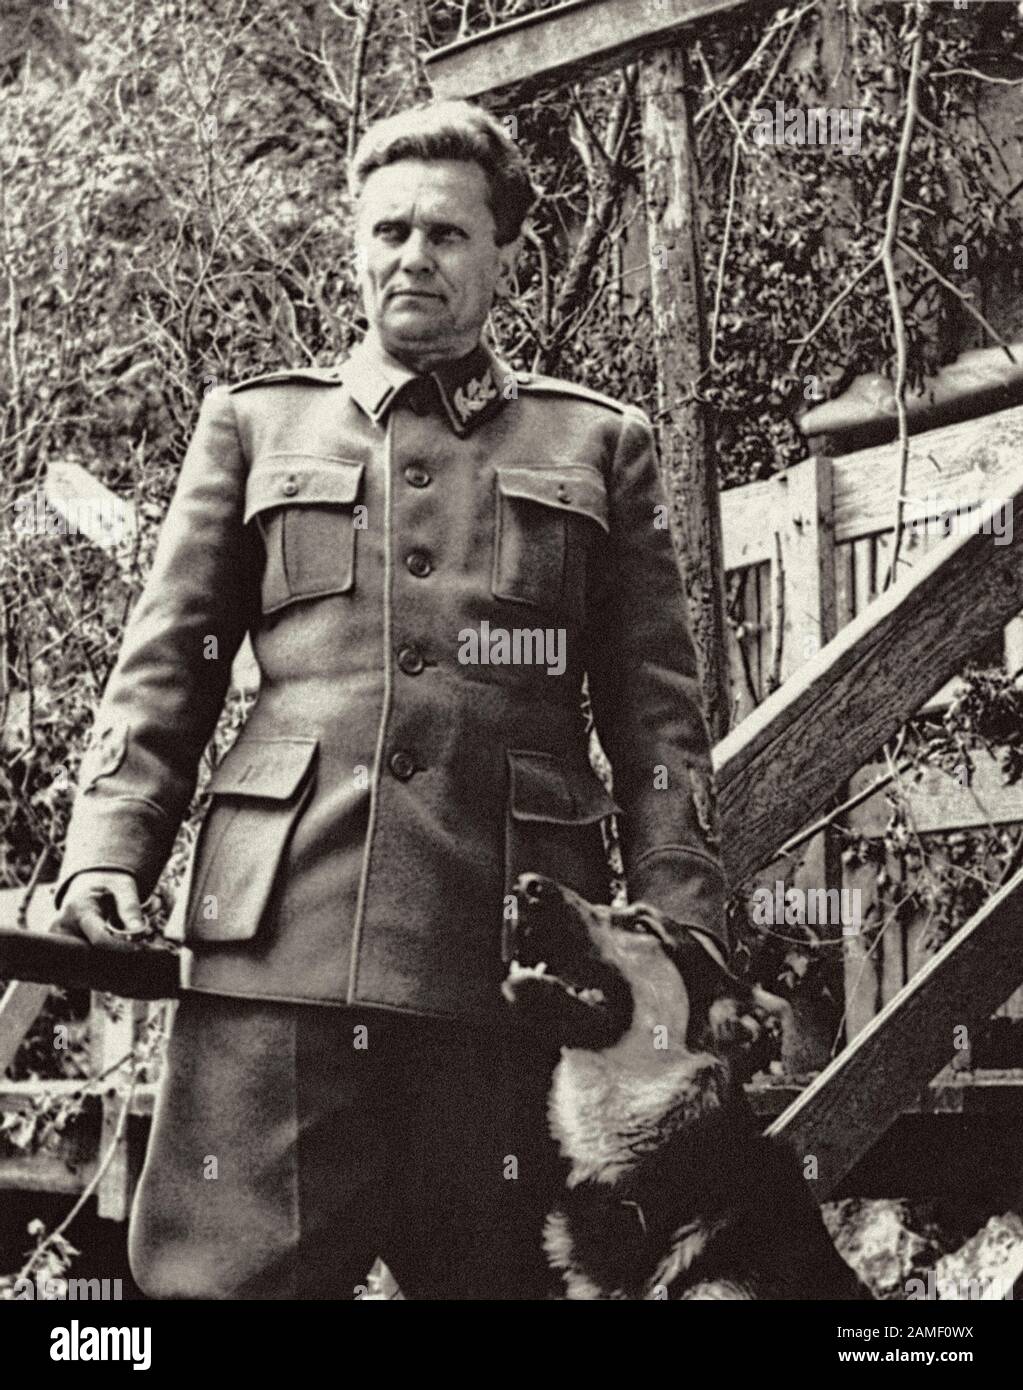 Le maréchal Josip Broz Tito, le chef des forces armées partisanes unies contre les envahisseurs nazis et leurs alliés, pose avec son chien. Banque D'Images